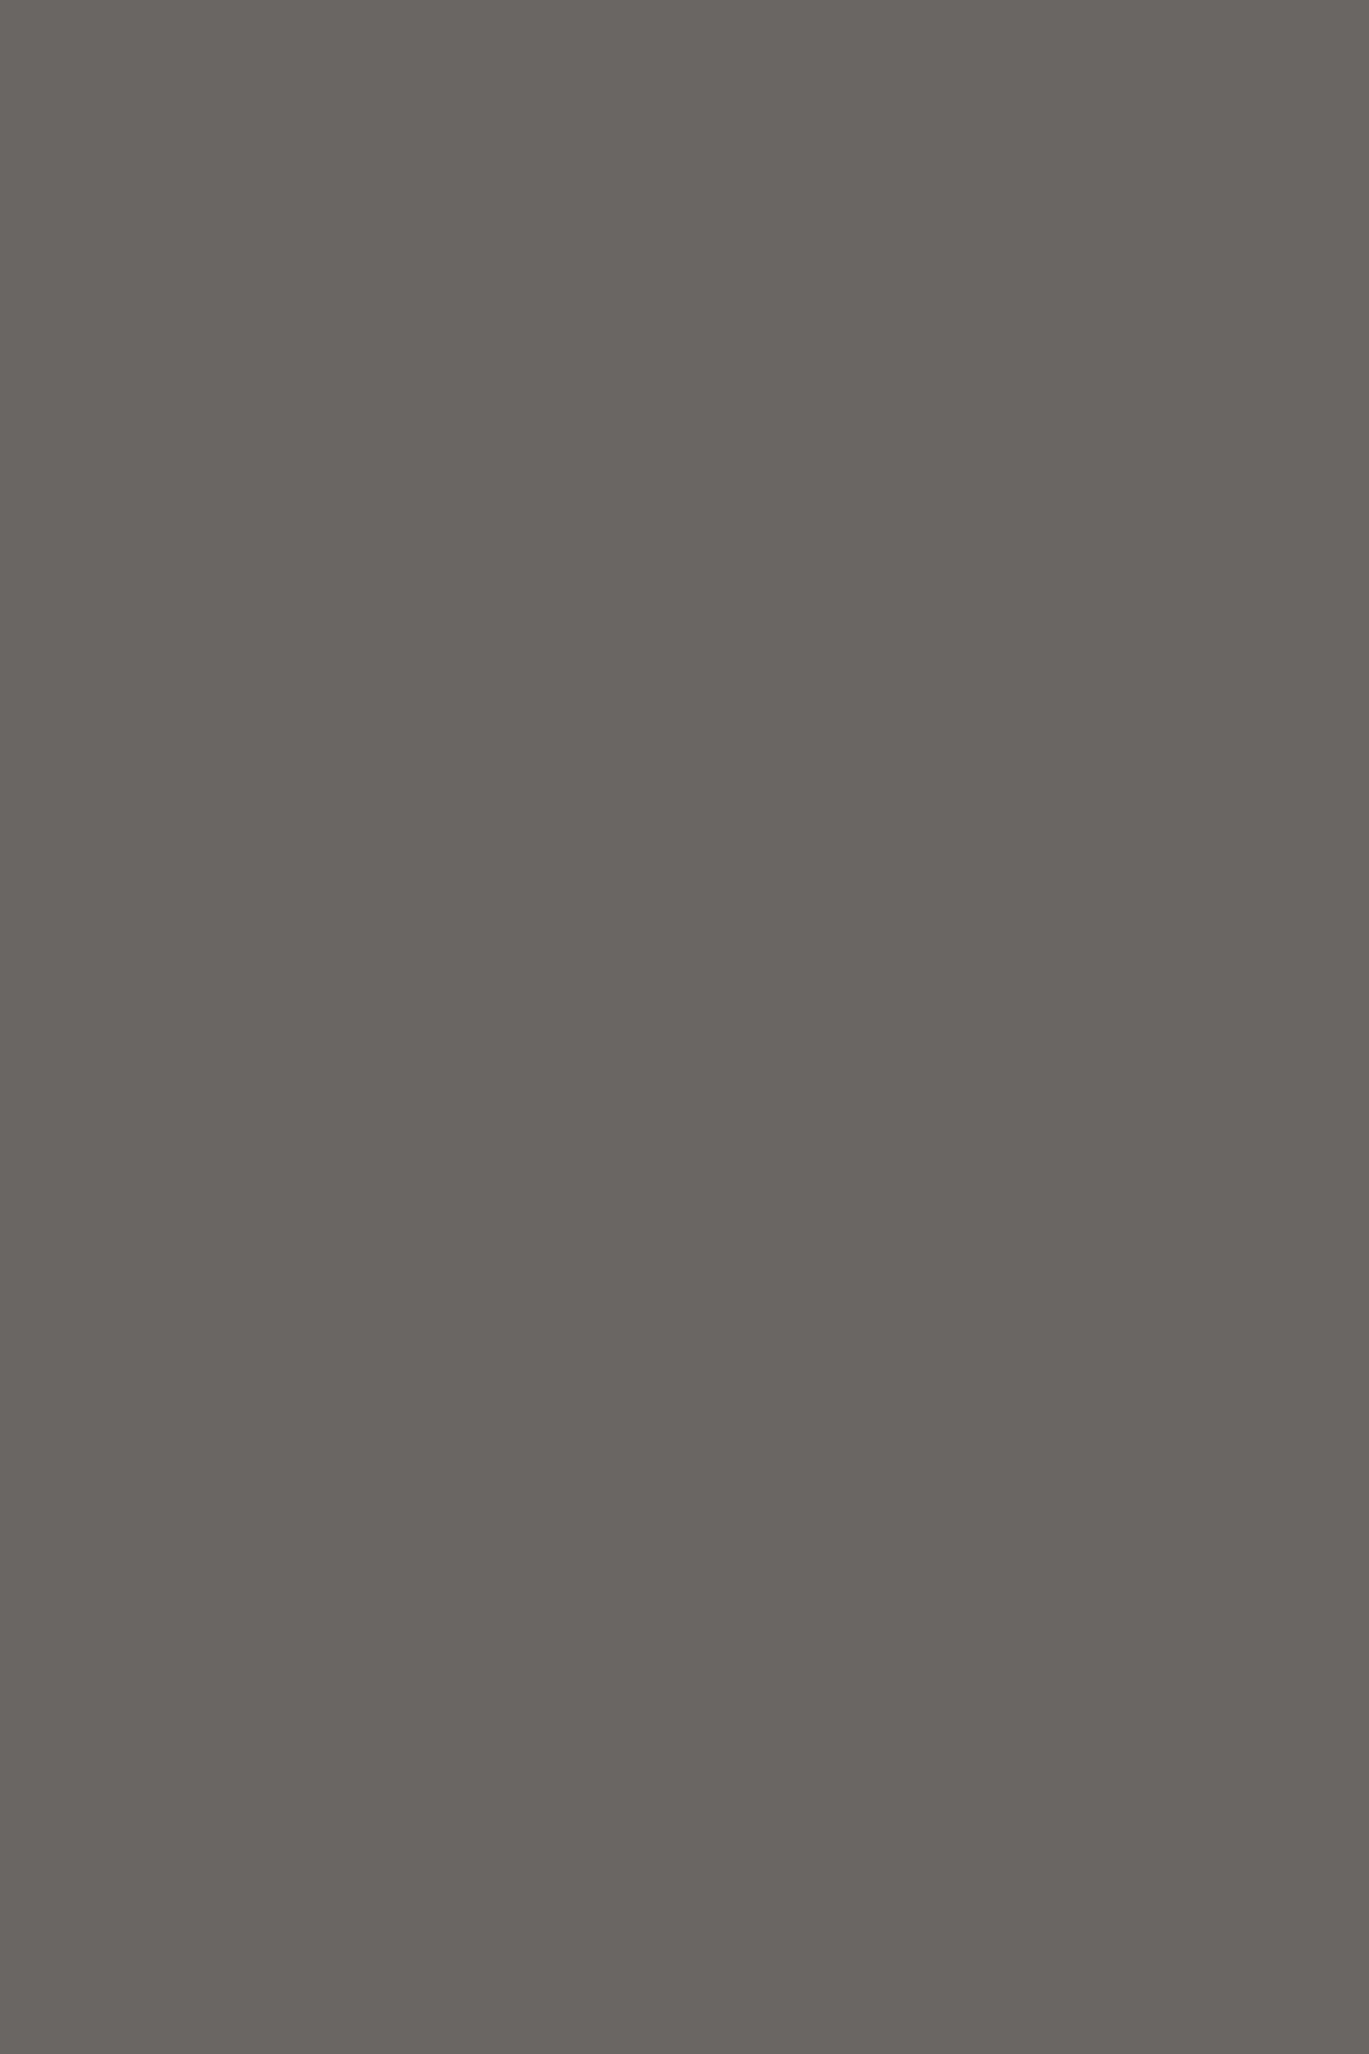 Скульптура «Мордовская женщина». Серия «Народности России». 1913. Государственный Эрмитаж, Санкт-Петербург